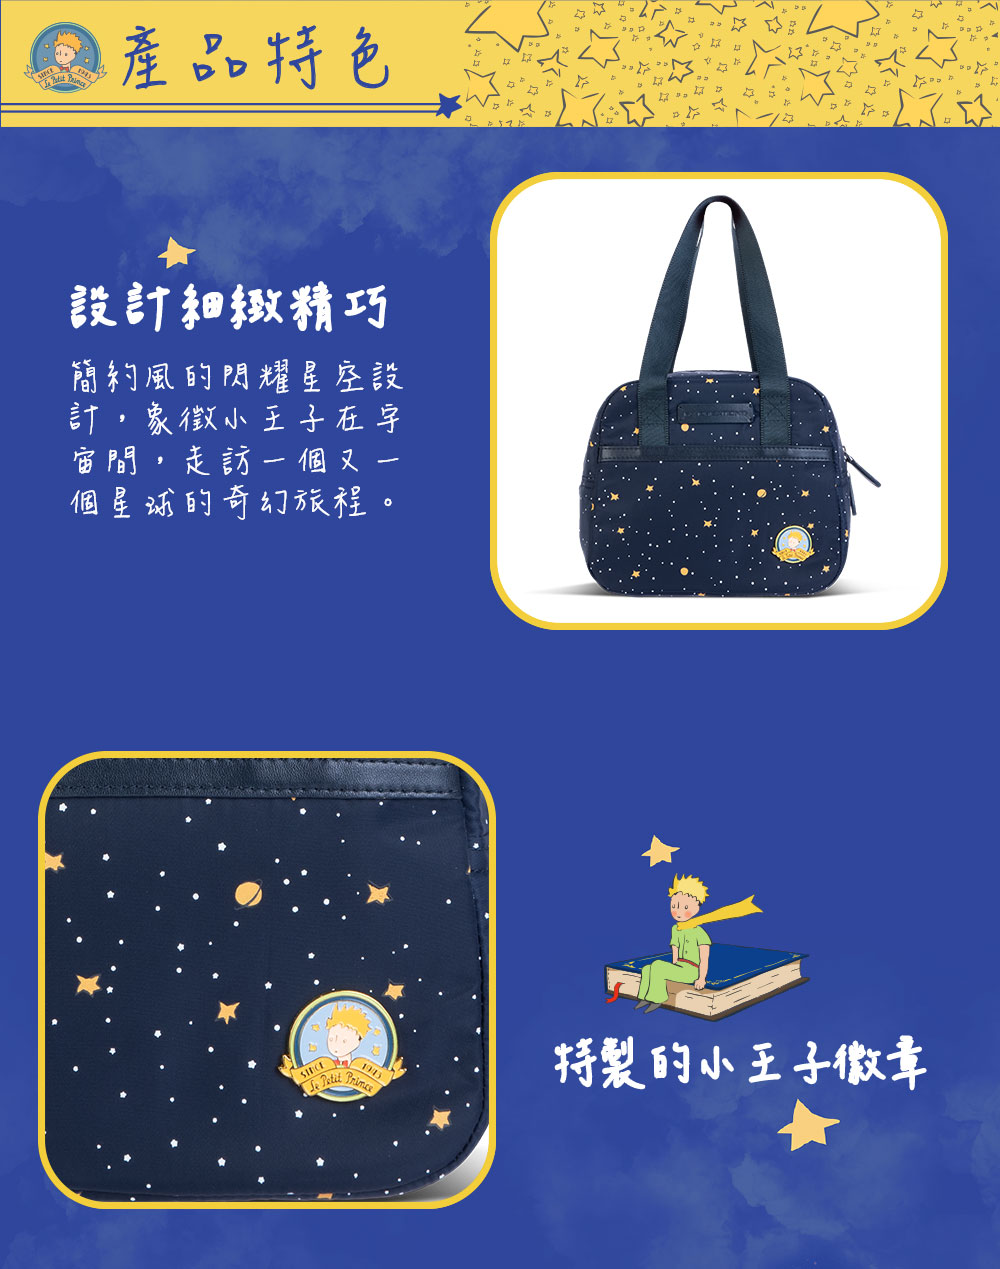 【小王子Le Petit Prince聯名款】閃耀星空親子系列 多用途手提袋-星空藍 FXG225-98